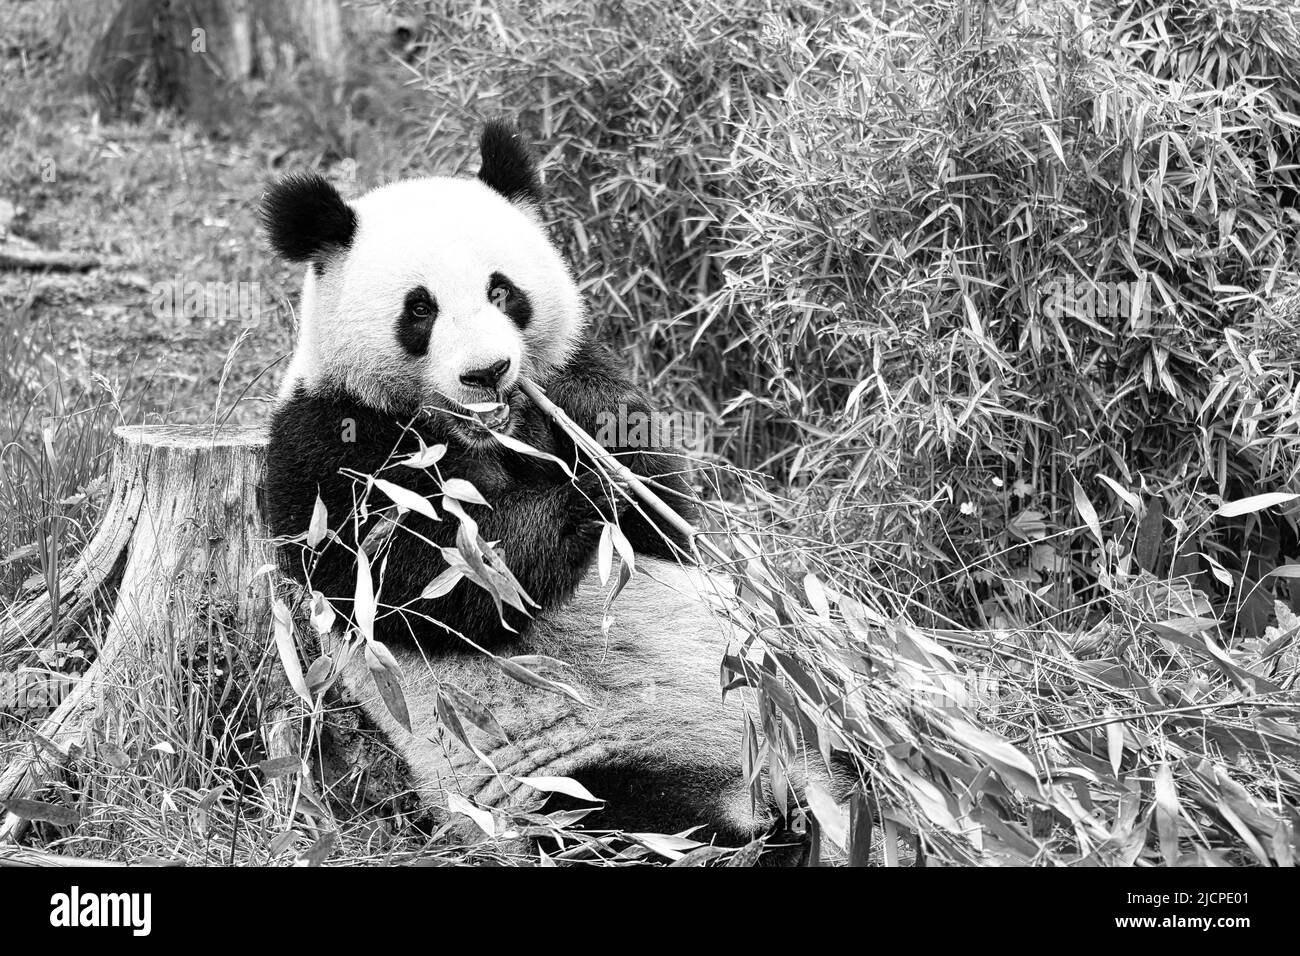 grand panda en noir et blanc, assis mangeant du bambou. Espèces en voie de disparition. Un mammifère noir et blanc qui ressemble à un ours en peluche. Photo profonde d'un bea rare Banque D'Images